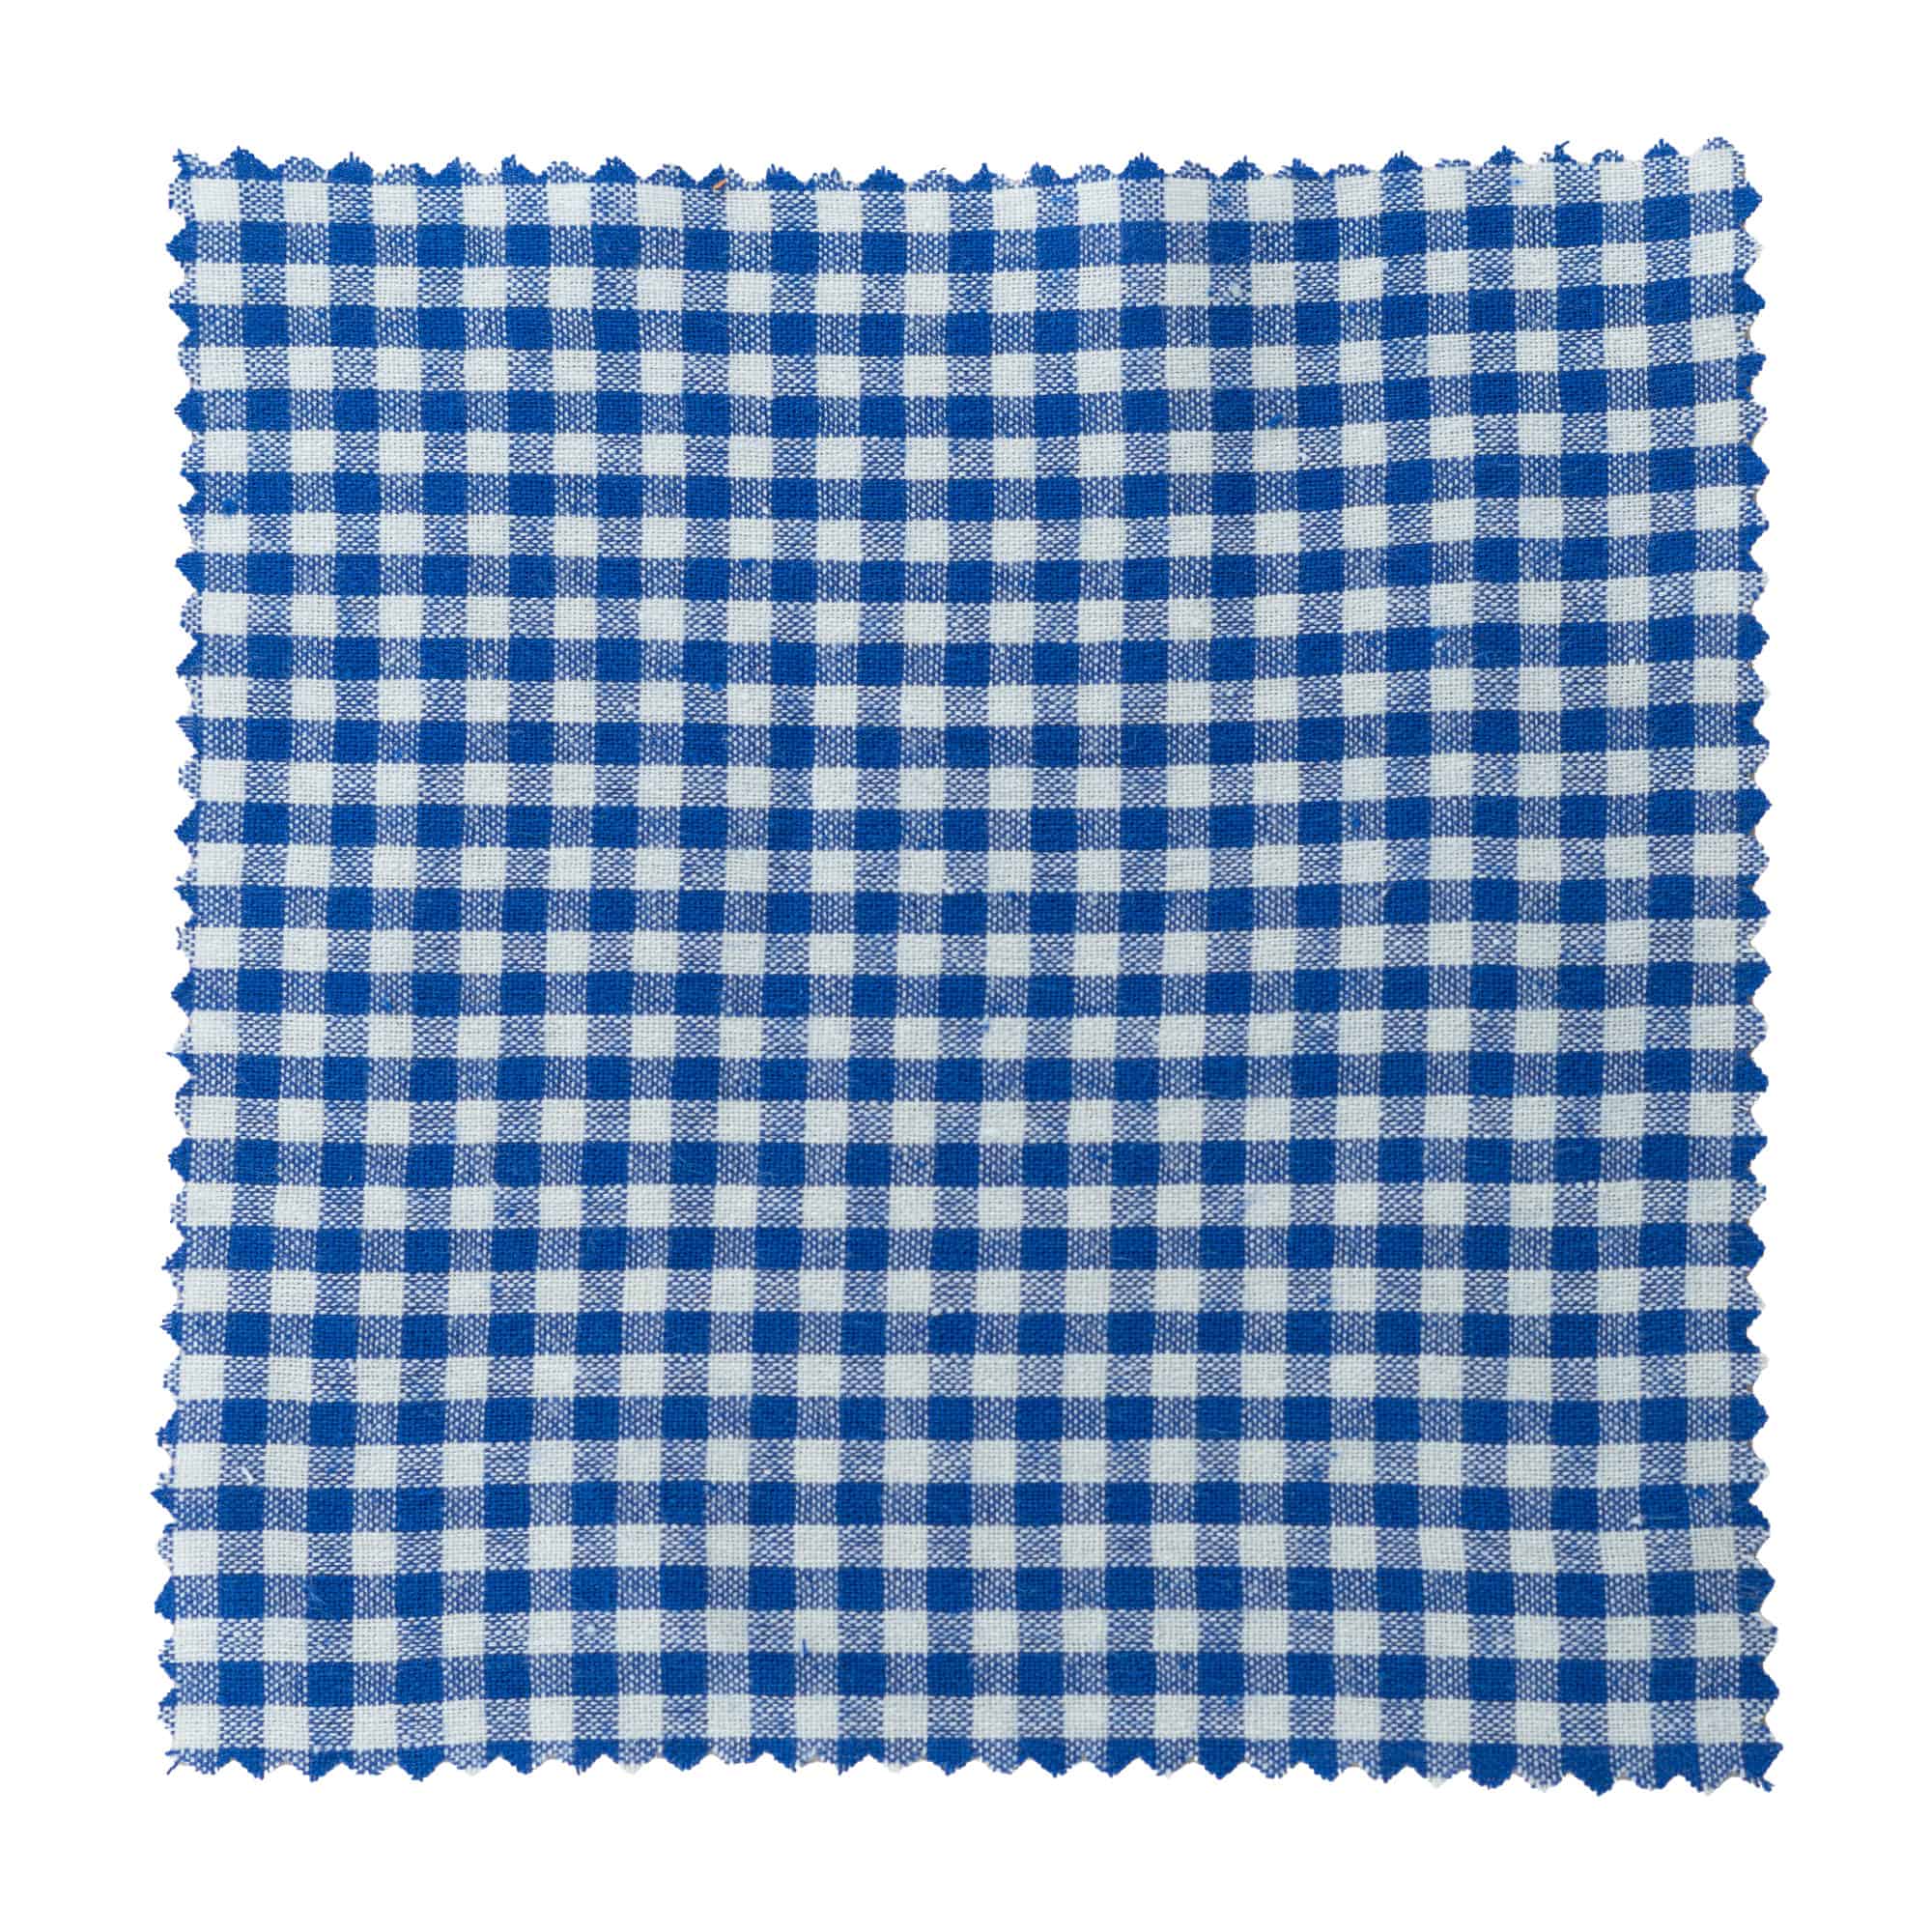 Kapturek na słoik w kratkę 15x15, kwadratowy, materiał tekstylny, kolor ciemnoniebieski, zamknięcie: TO58-TO82